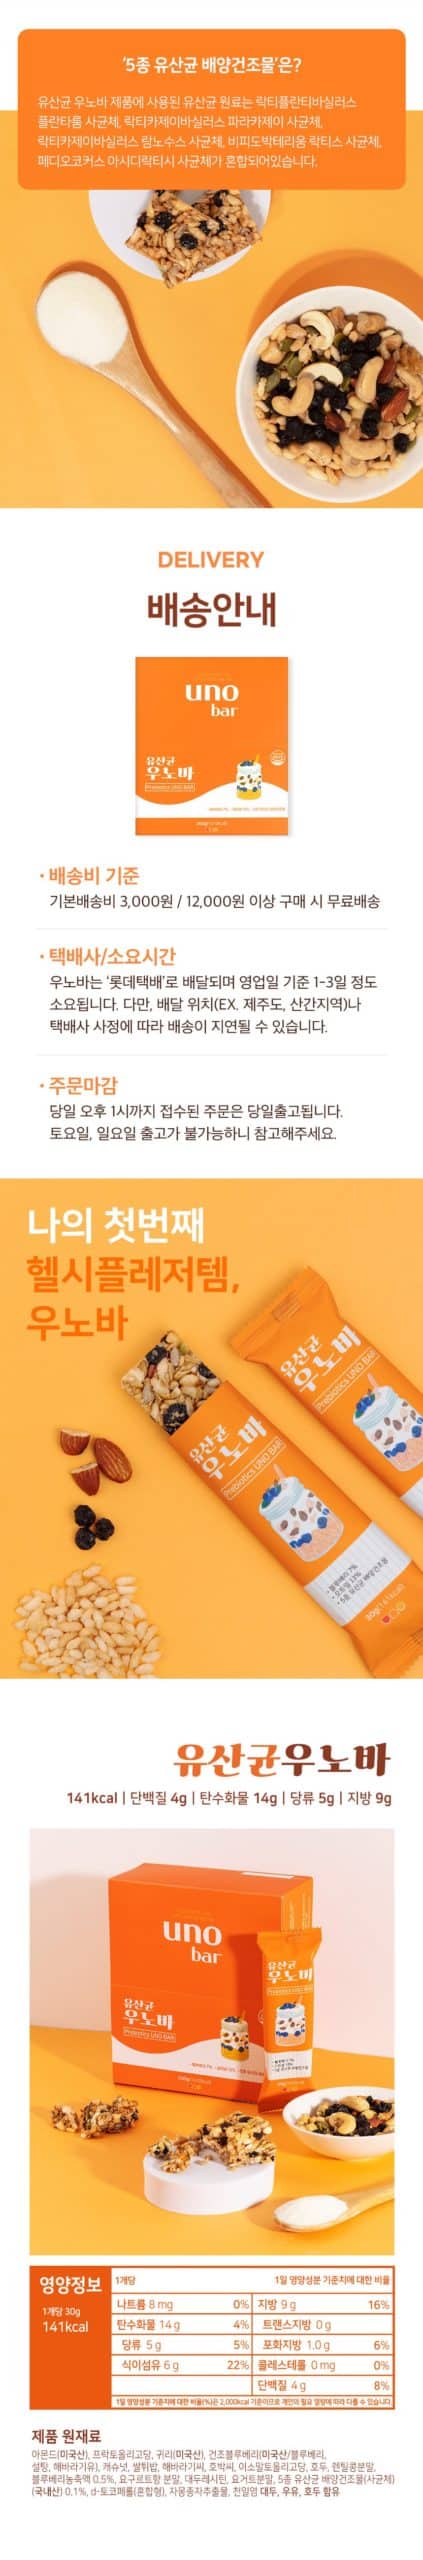 韓國食品-[유산균 우노바] 요구르트맛 에너지바 30g